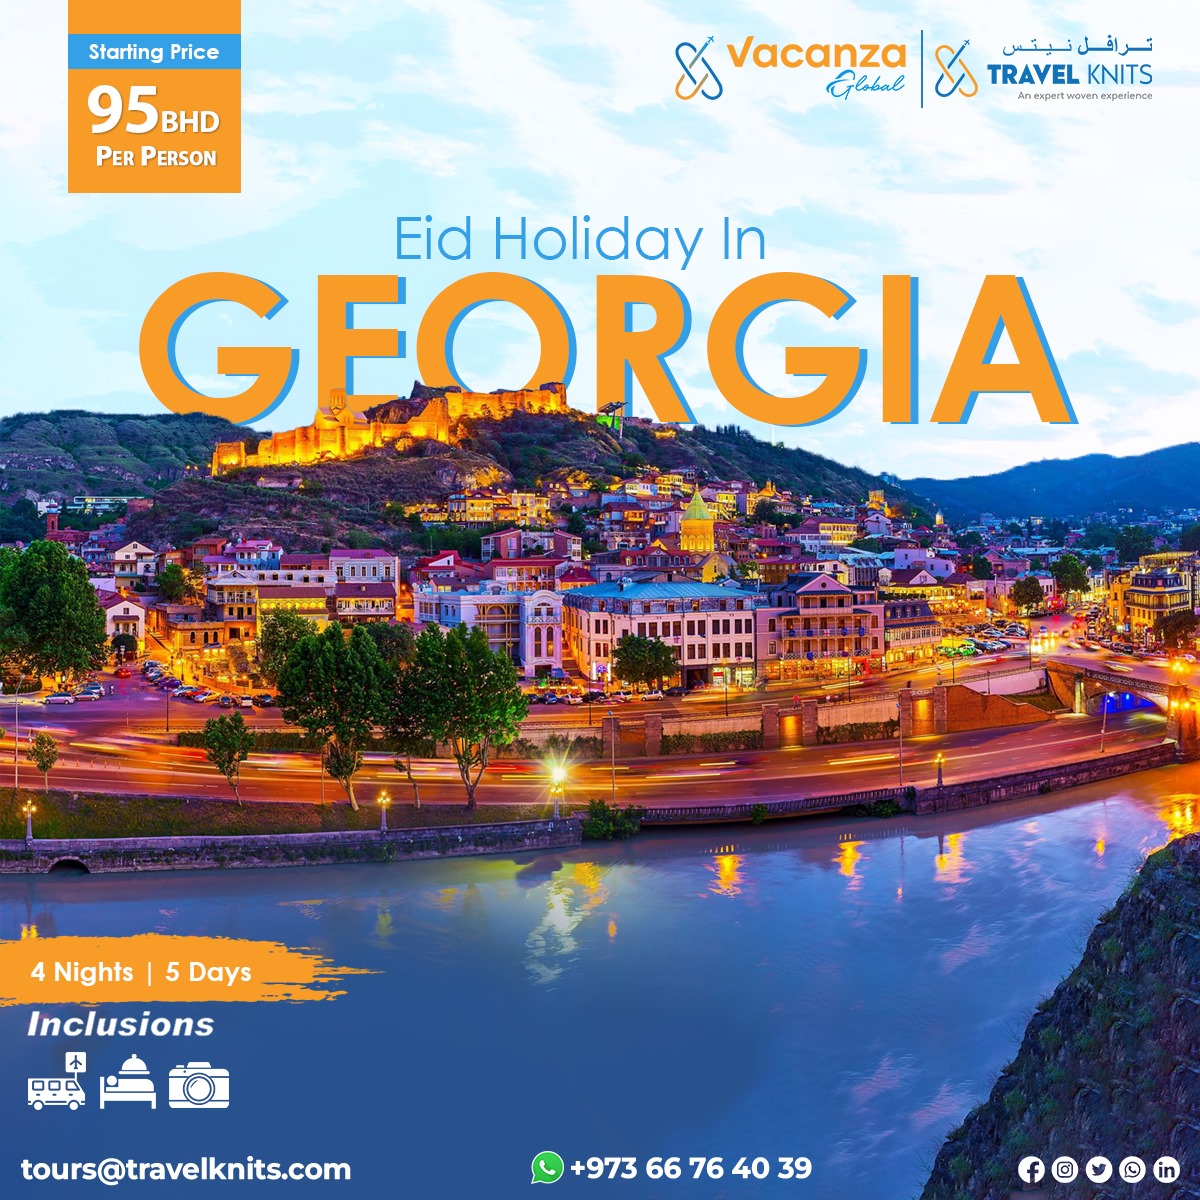 Eid holiday in Georgia|												